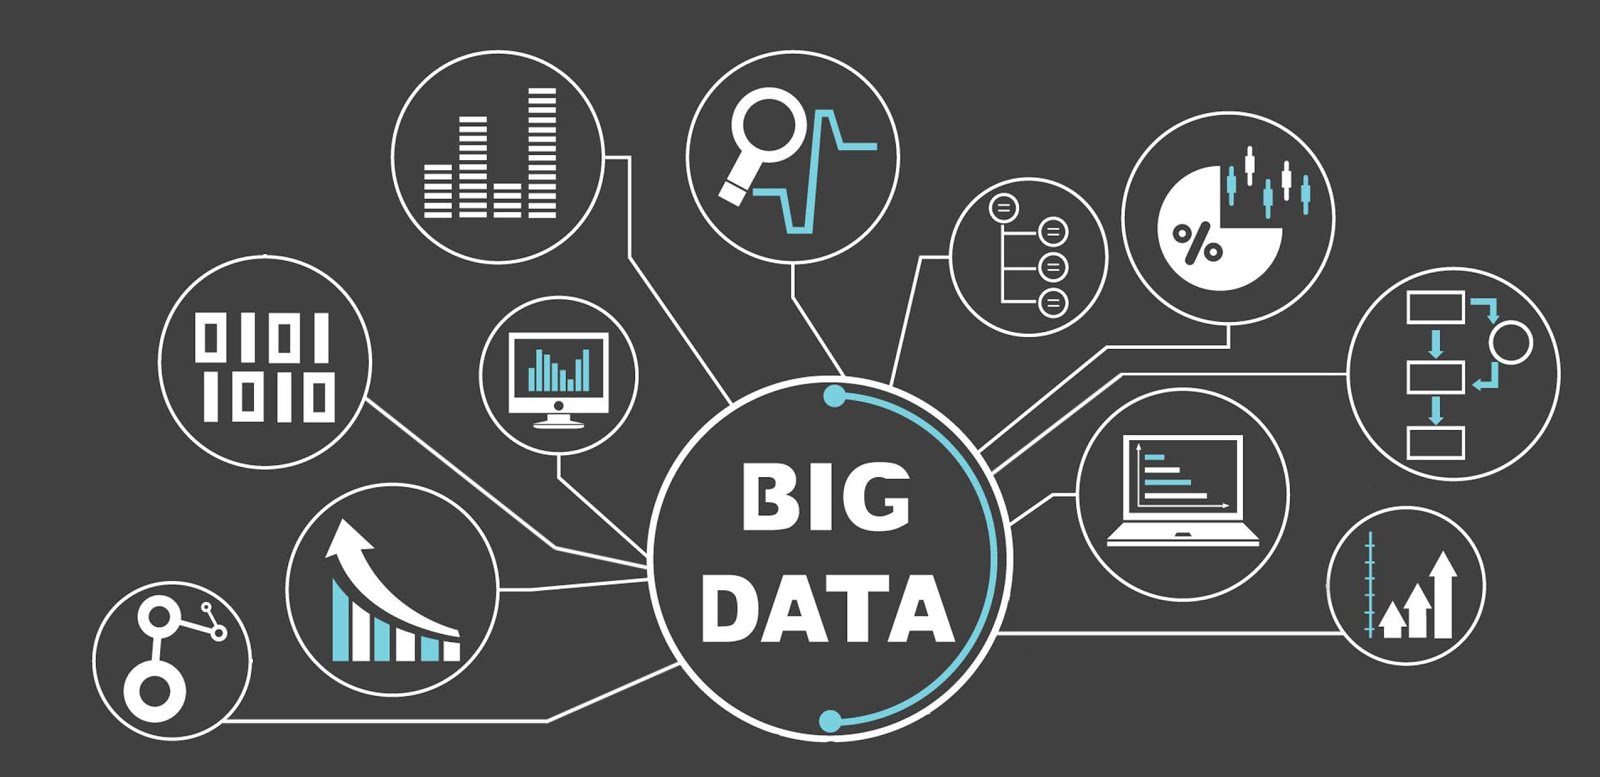 Big data scope